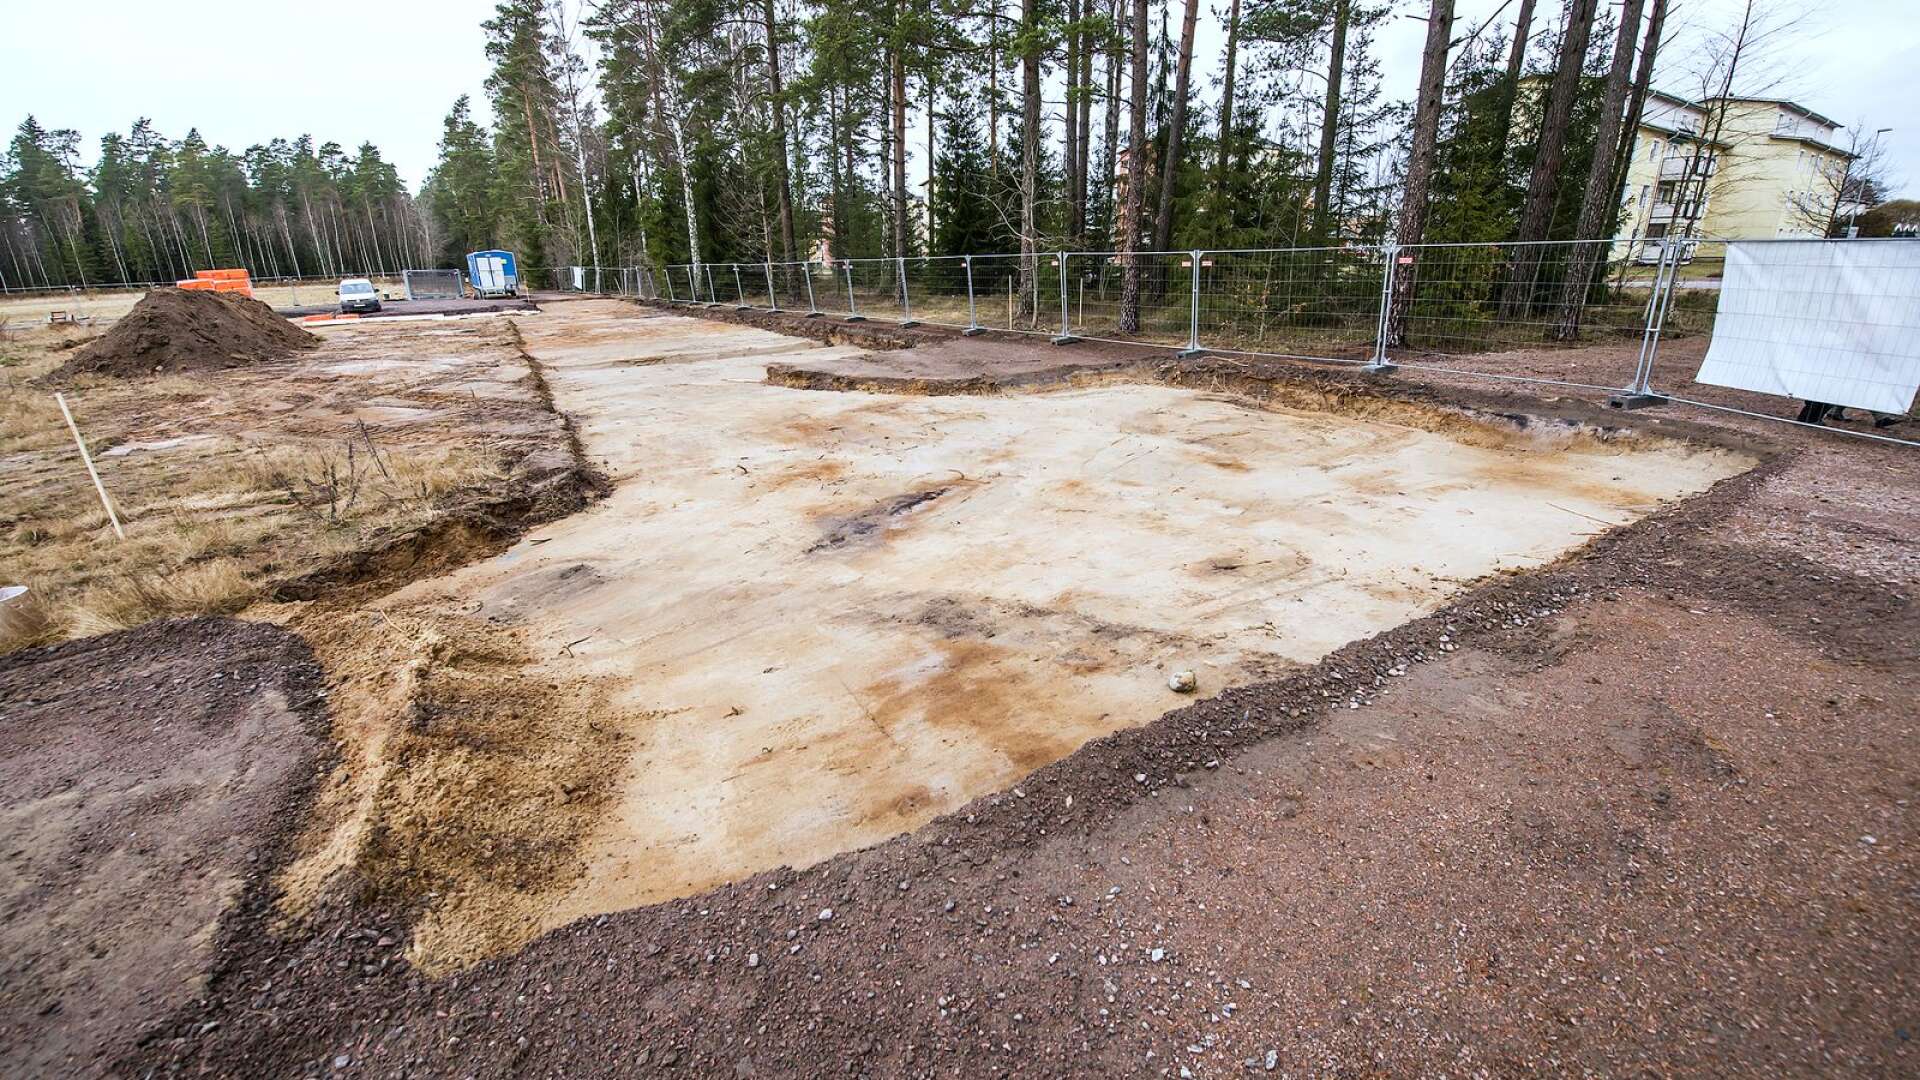 Karlstads kommun har börjat förbereda för arenasatsningen på Sannafältet där tre arenor ska byggas i en första etapp som även inkluderar tak över Tingvalla isstadion.